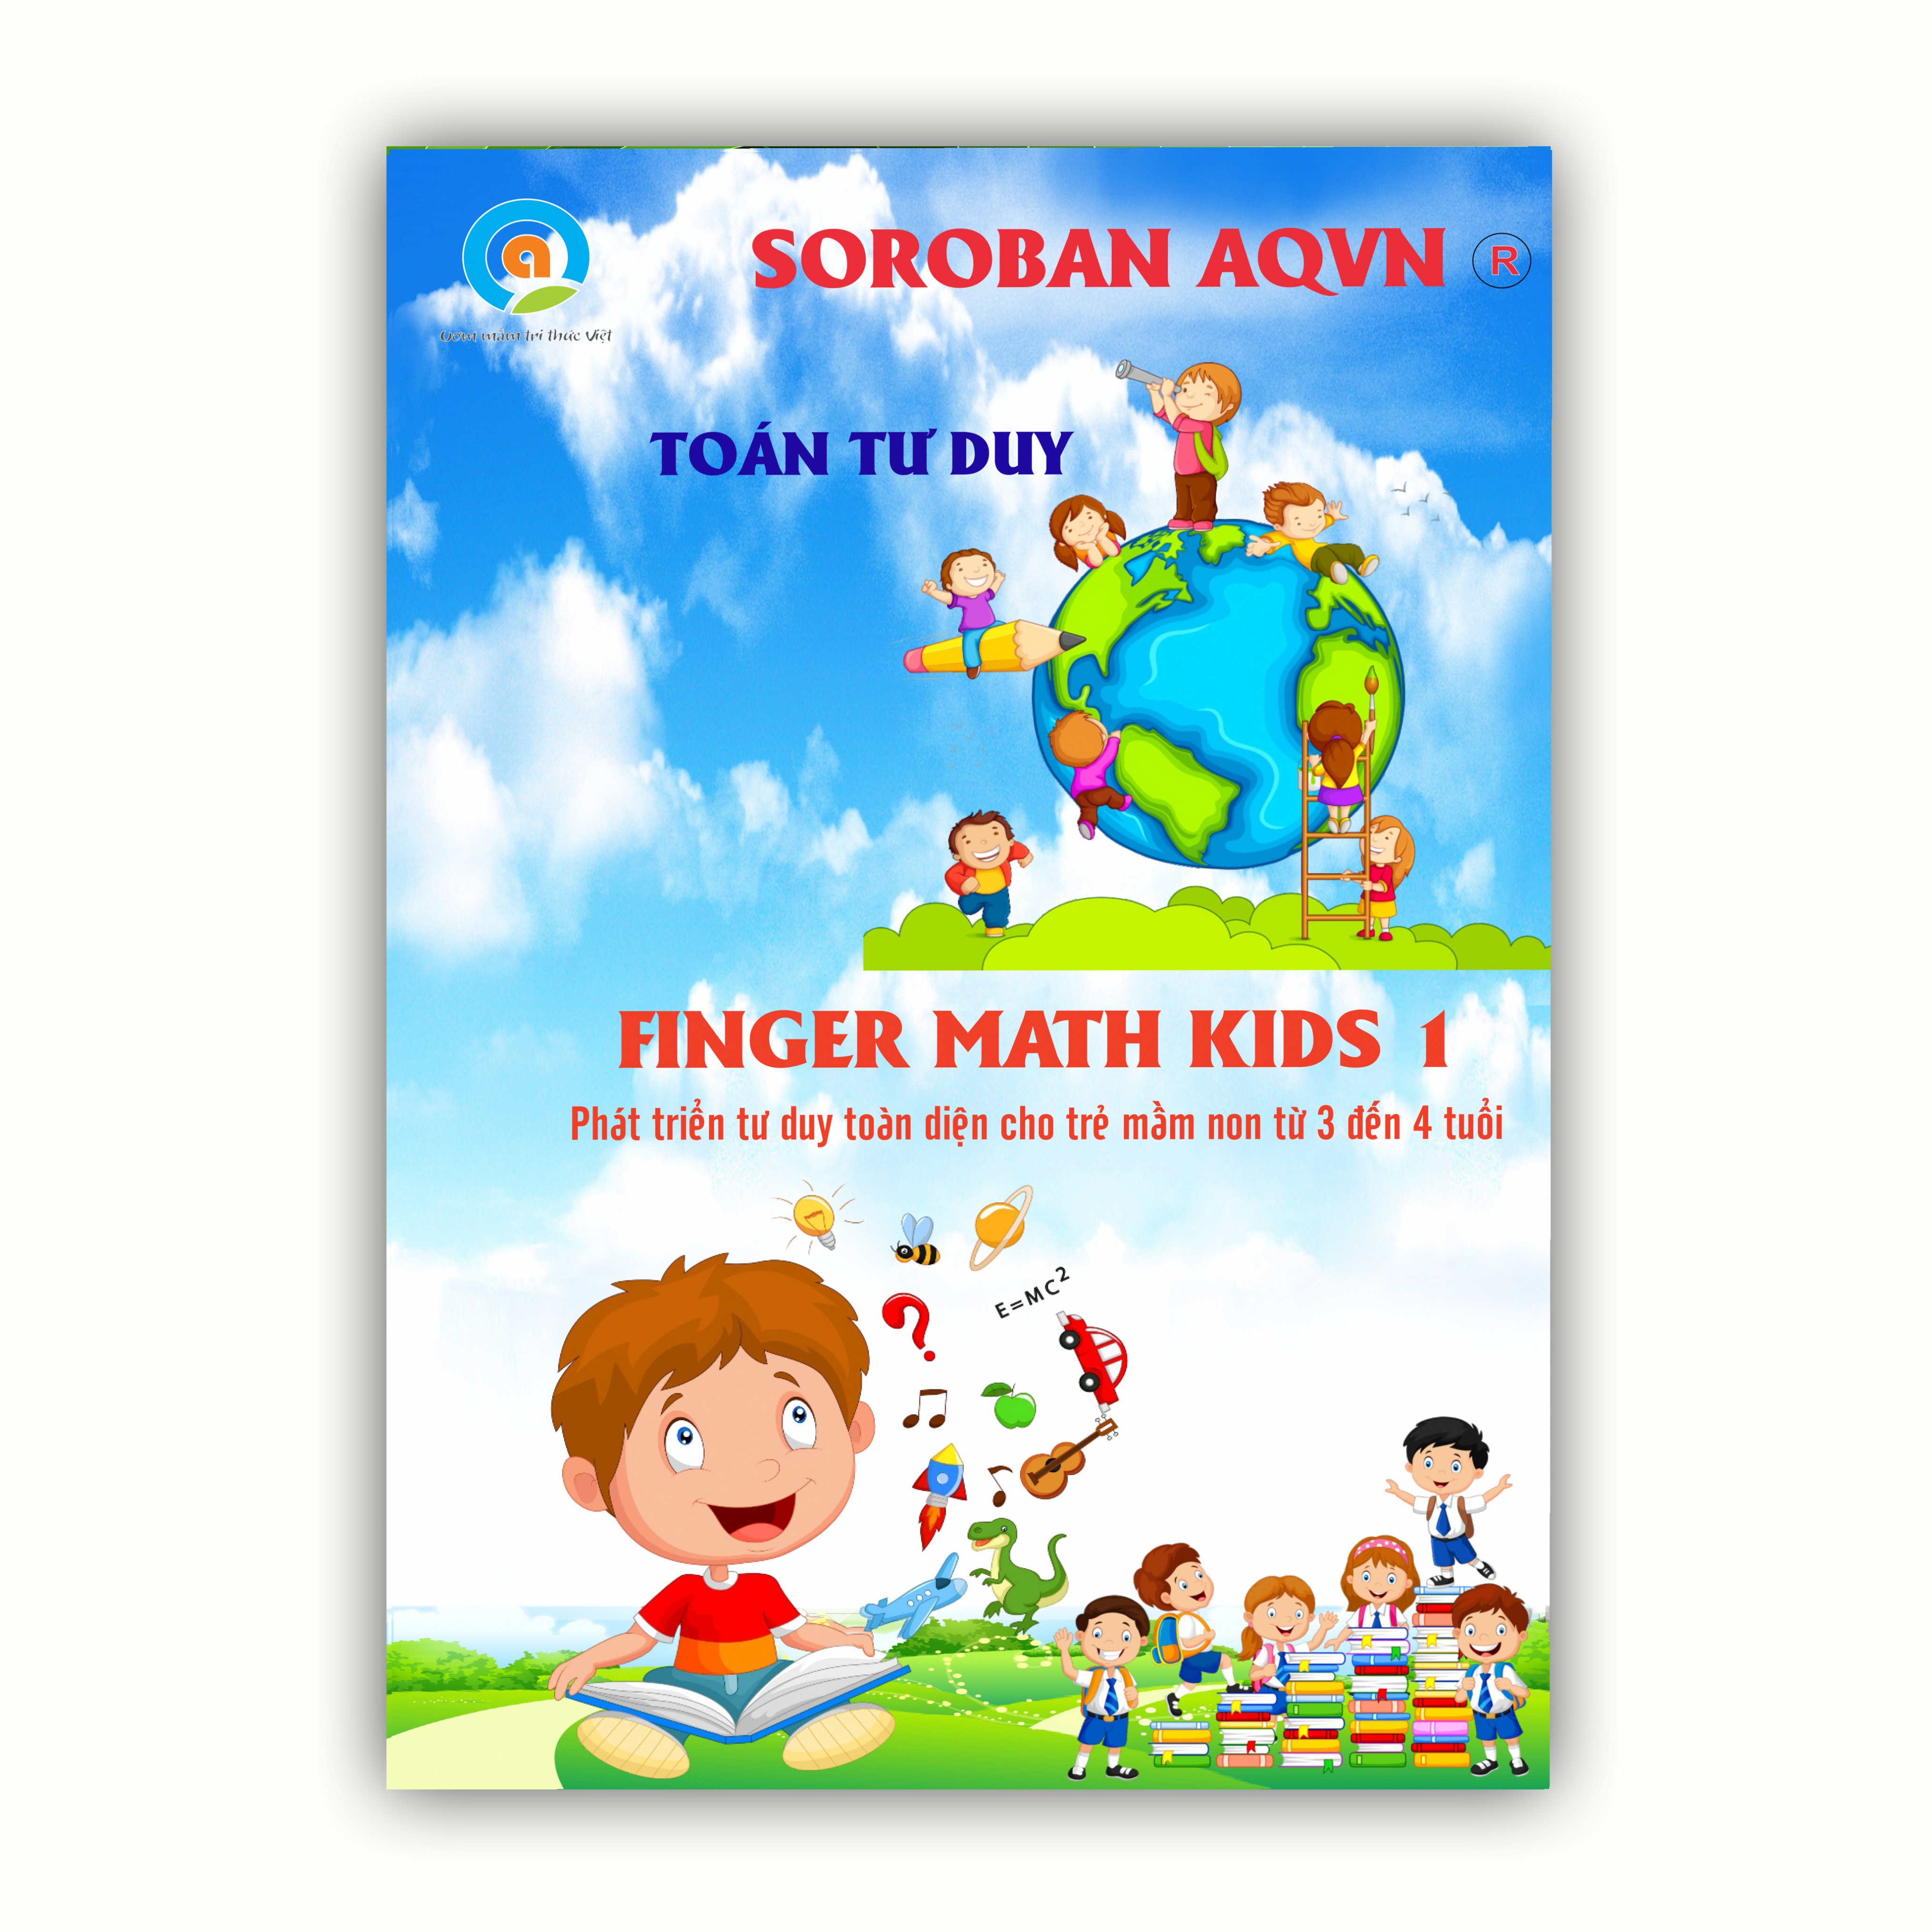 Hình ảnh Finger math kids 1